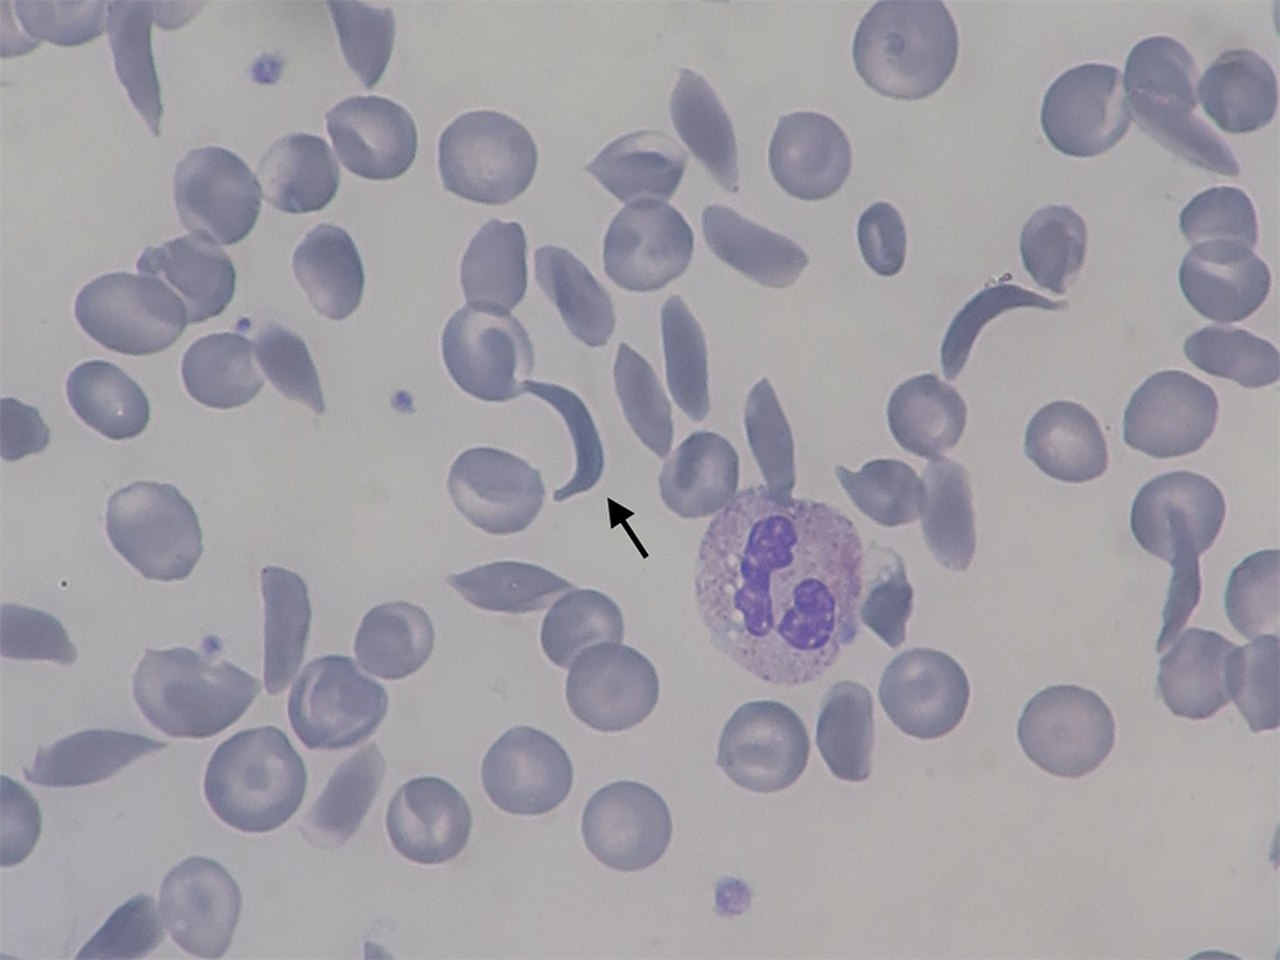 Серповидно клеточная анемия фото